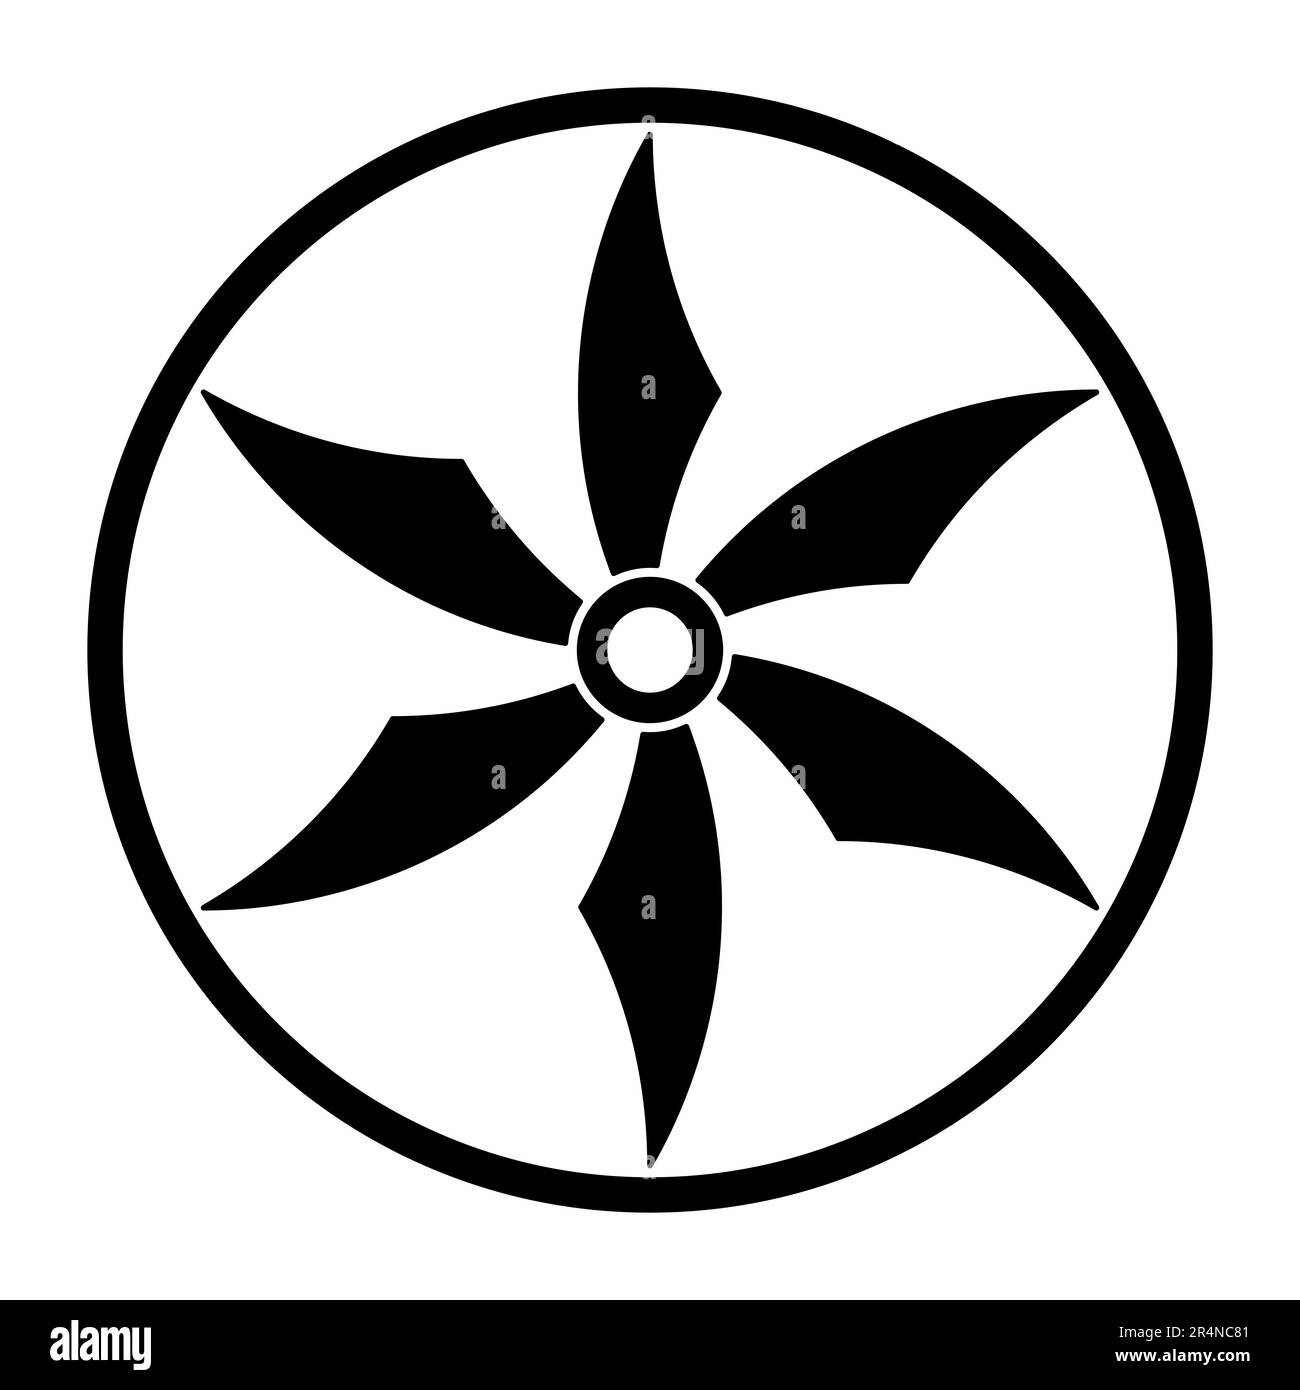 Stella a sei punte in cerchio, un simbolo simile a una ruota shuriken, un'arma giapponese nascosta, nota anche come lancio o stella ninja. Foto Stock